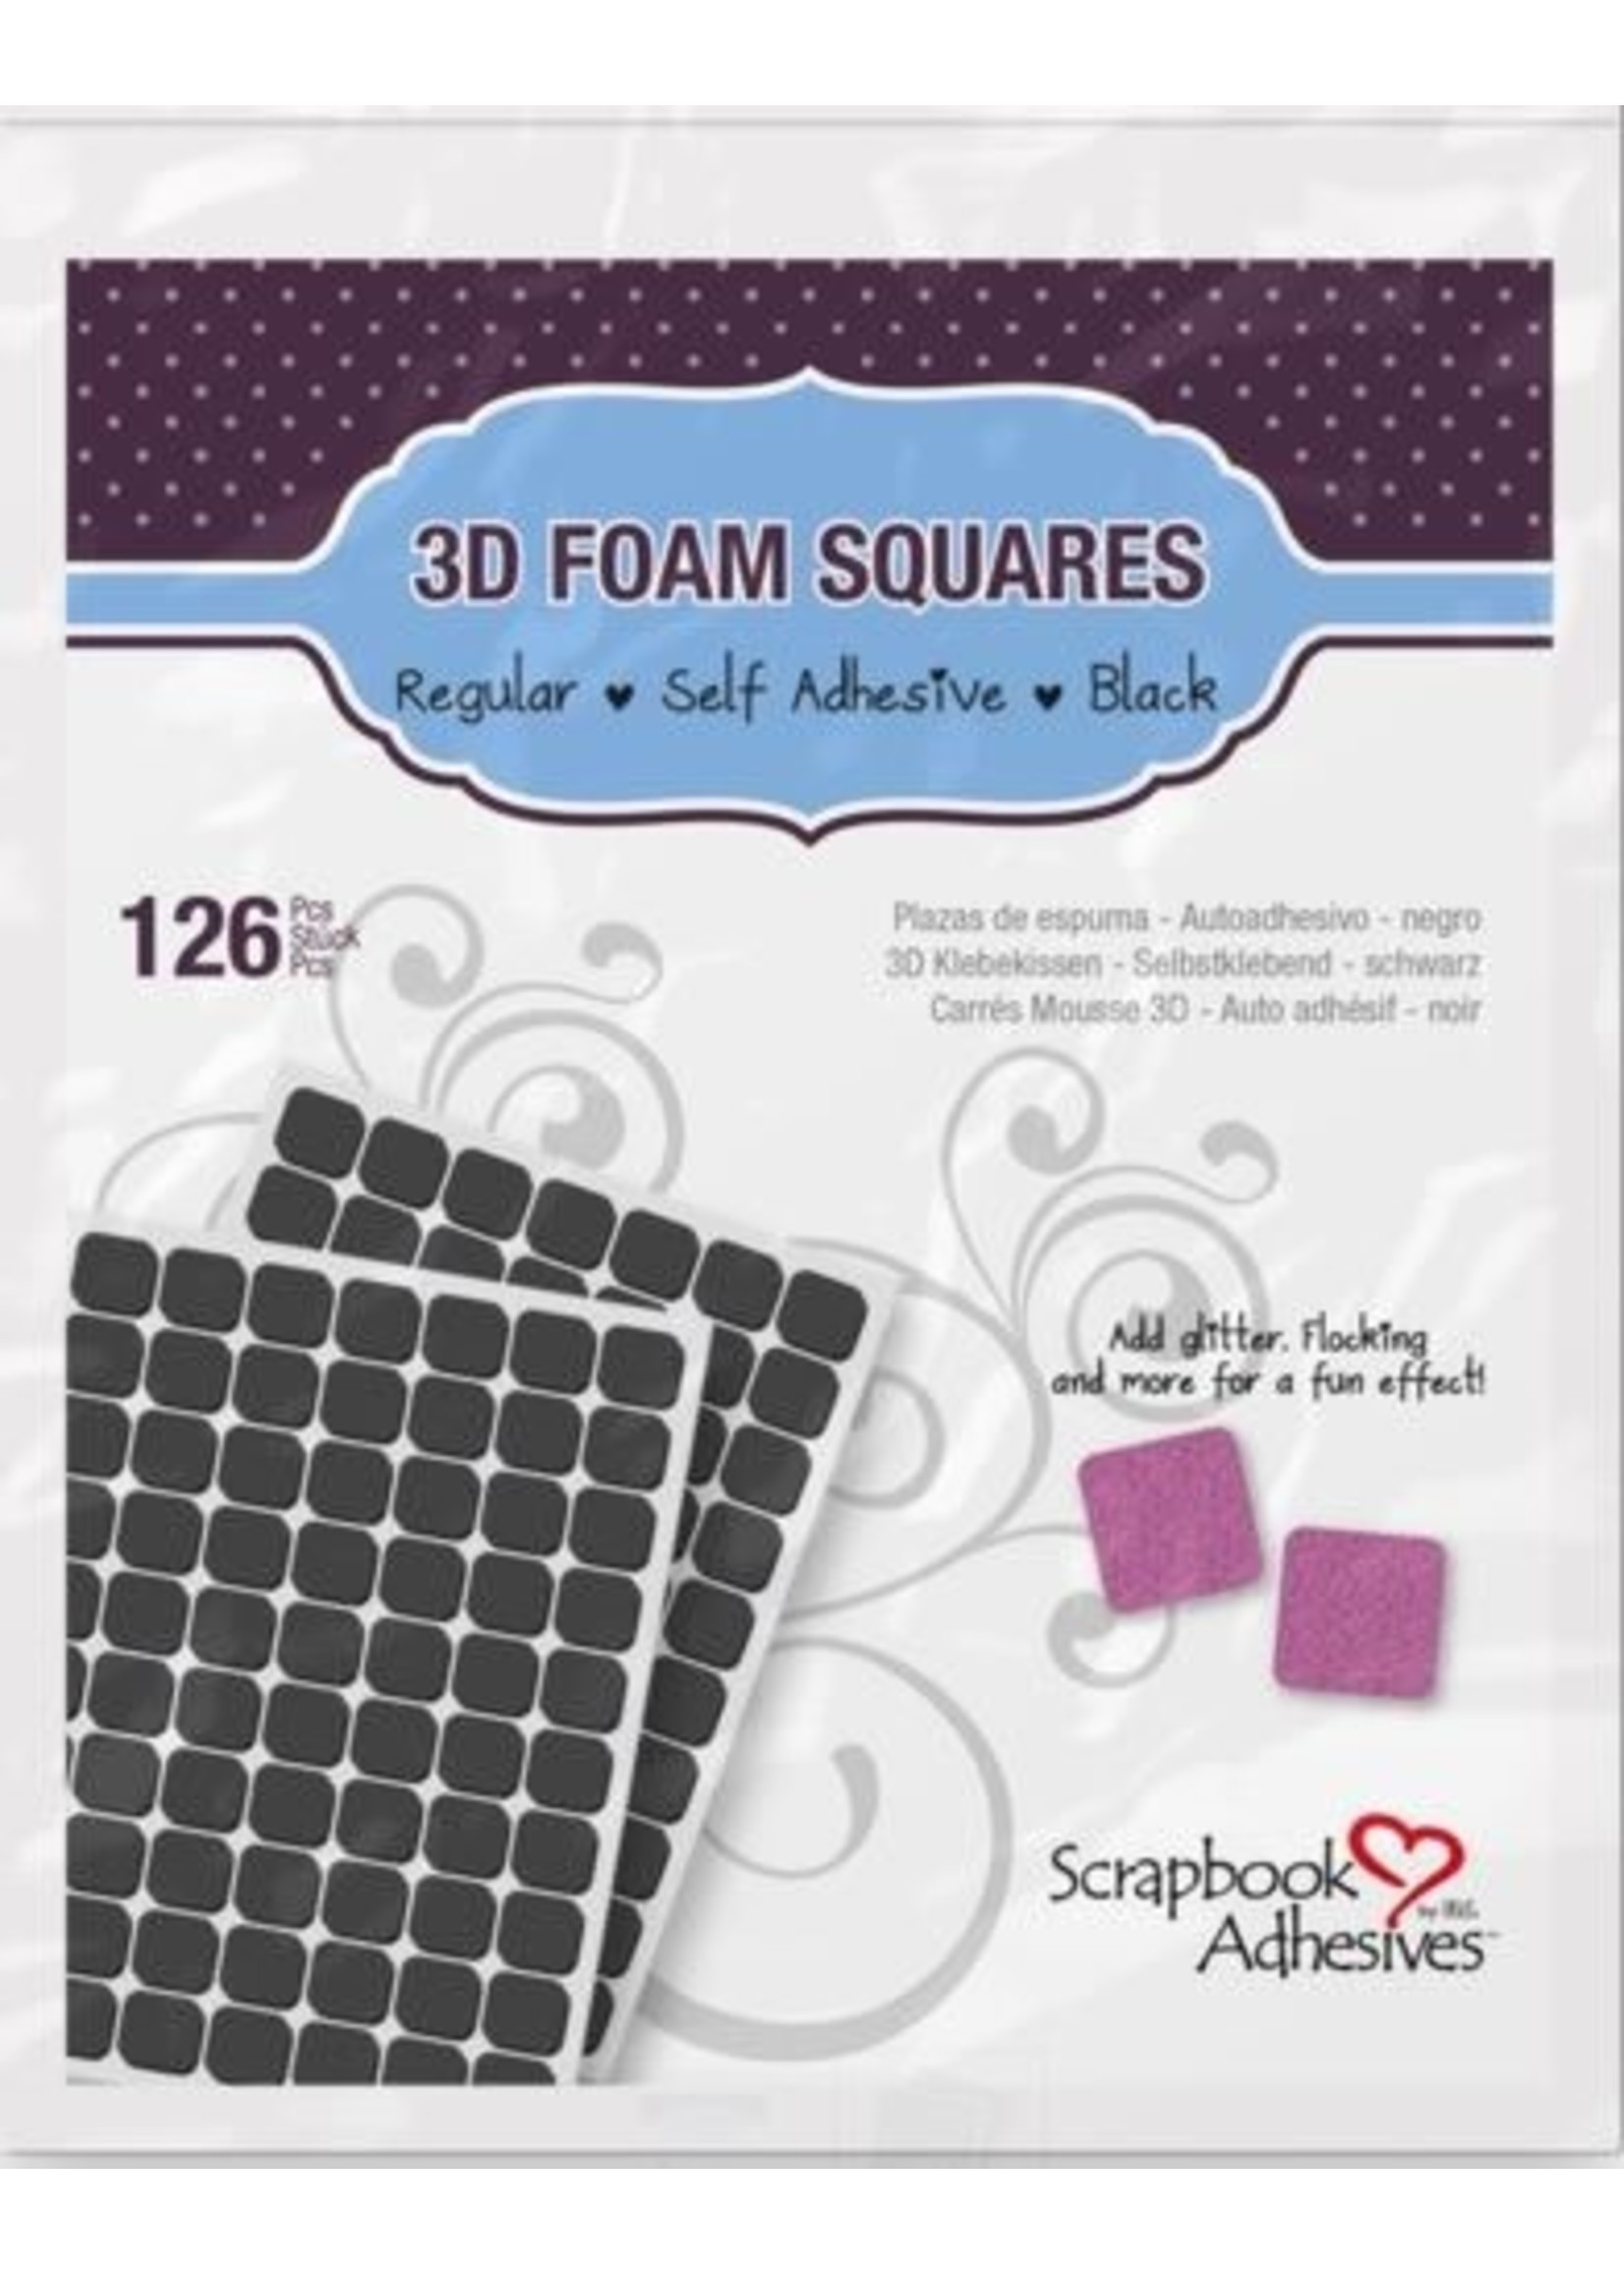 Scrapbook Adhesive SA 3D Foam Squares Regular Black